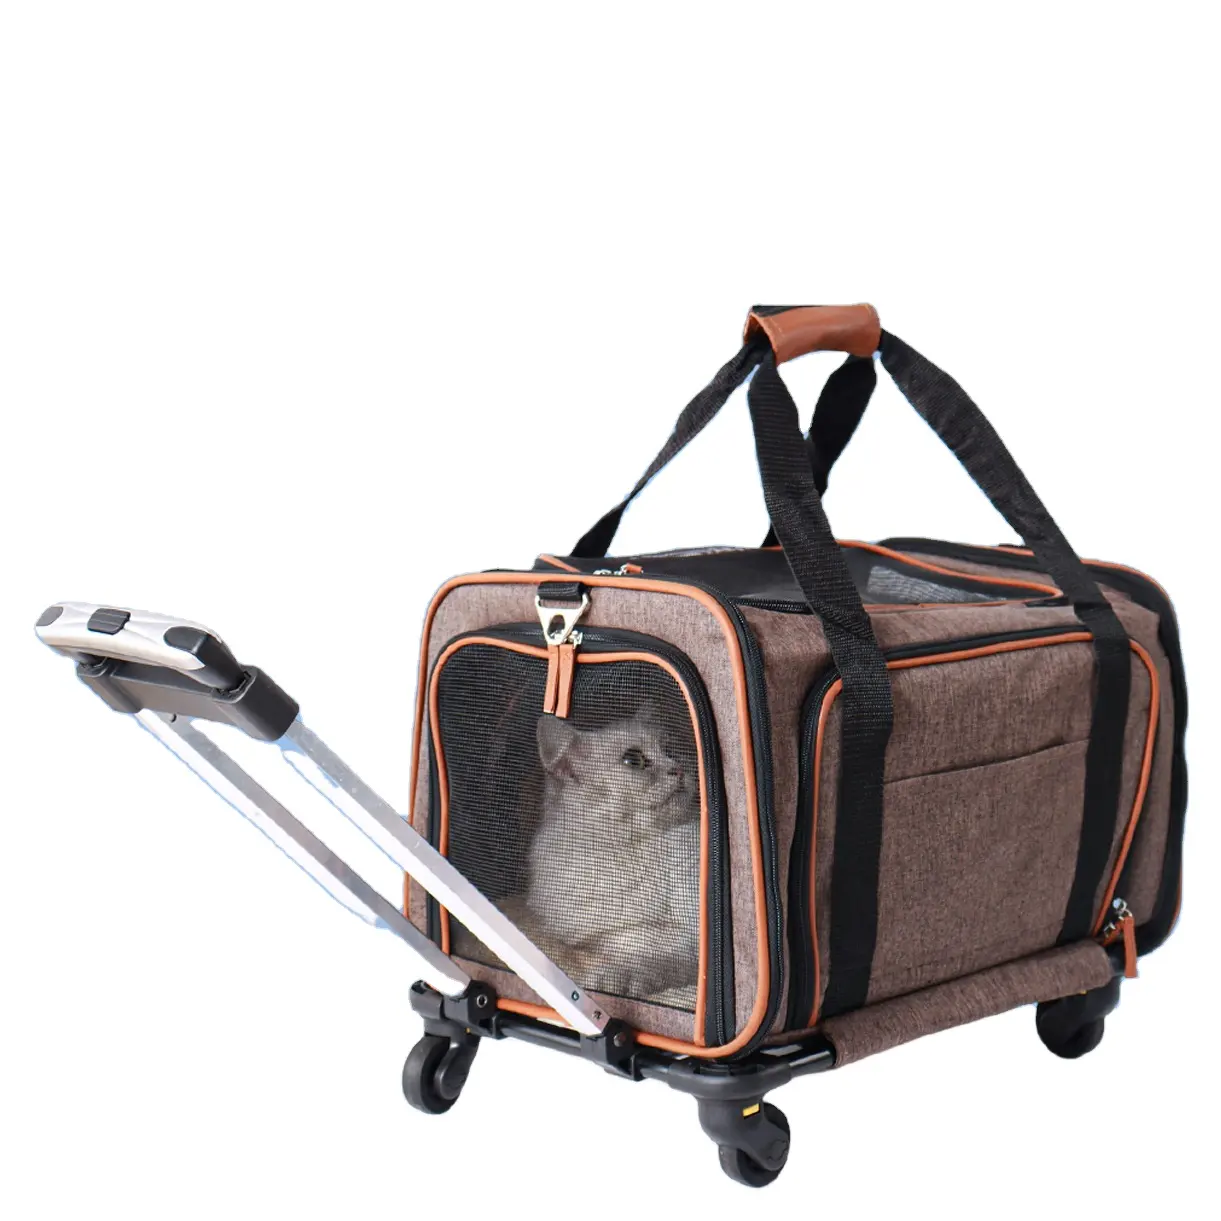 बिल्लियों, कुत्तों, बिल्ली के बच्चे, पिल्लों के बैग के लिए पहियों के साथ ट्रॉली पालतू वाहक प्रीमियम एयरलाइन स्वीकृत पालतू वाहक